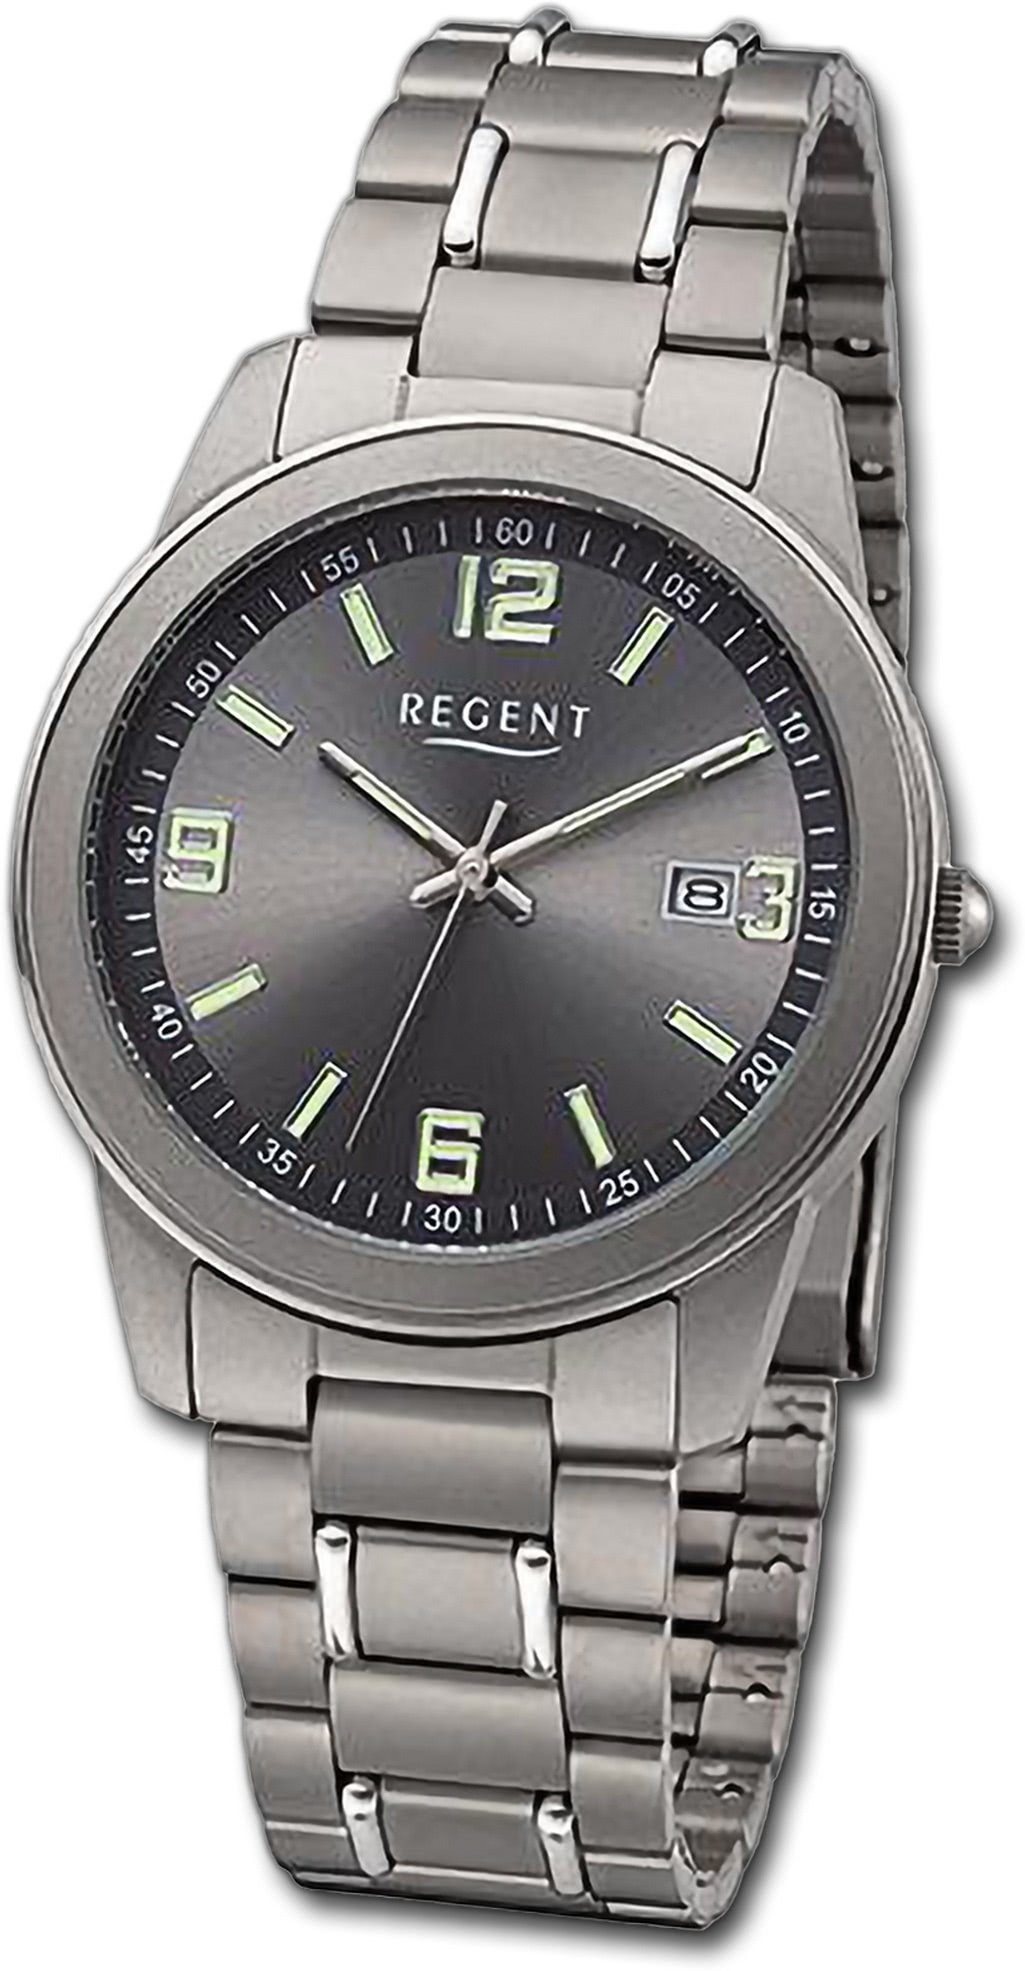 Regent Titanarmband groß Armbanduhr Quarzuhr rundes (ca. 38mm) Analog, Herrenuhr Gehäuse, grau, Regent Herren silber,